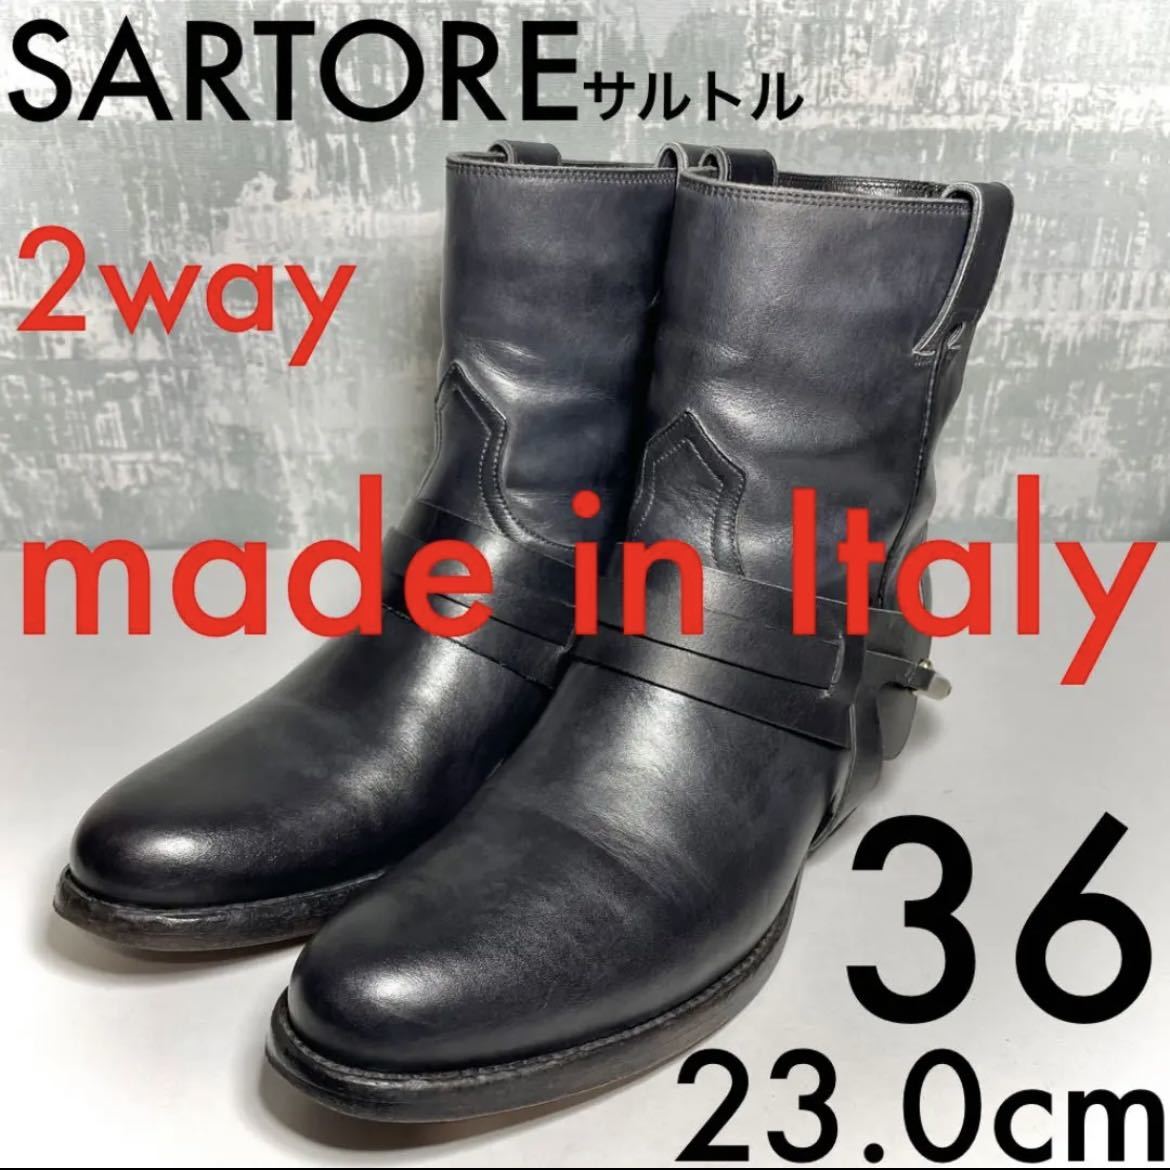 【2way！】SARTORE サルトル ベルト ショートブーツ36 23.0cm イタリア製 Italy製 ブラック 黒 取り外し可能 乗馬 ブーツ